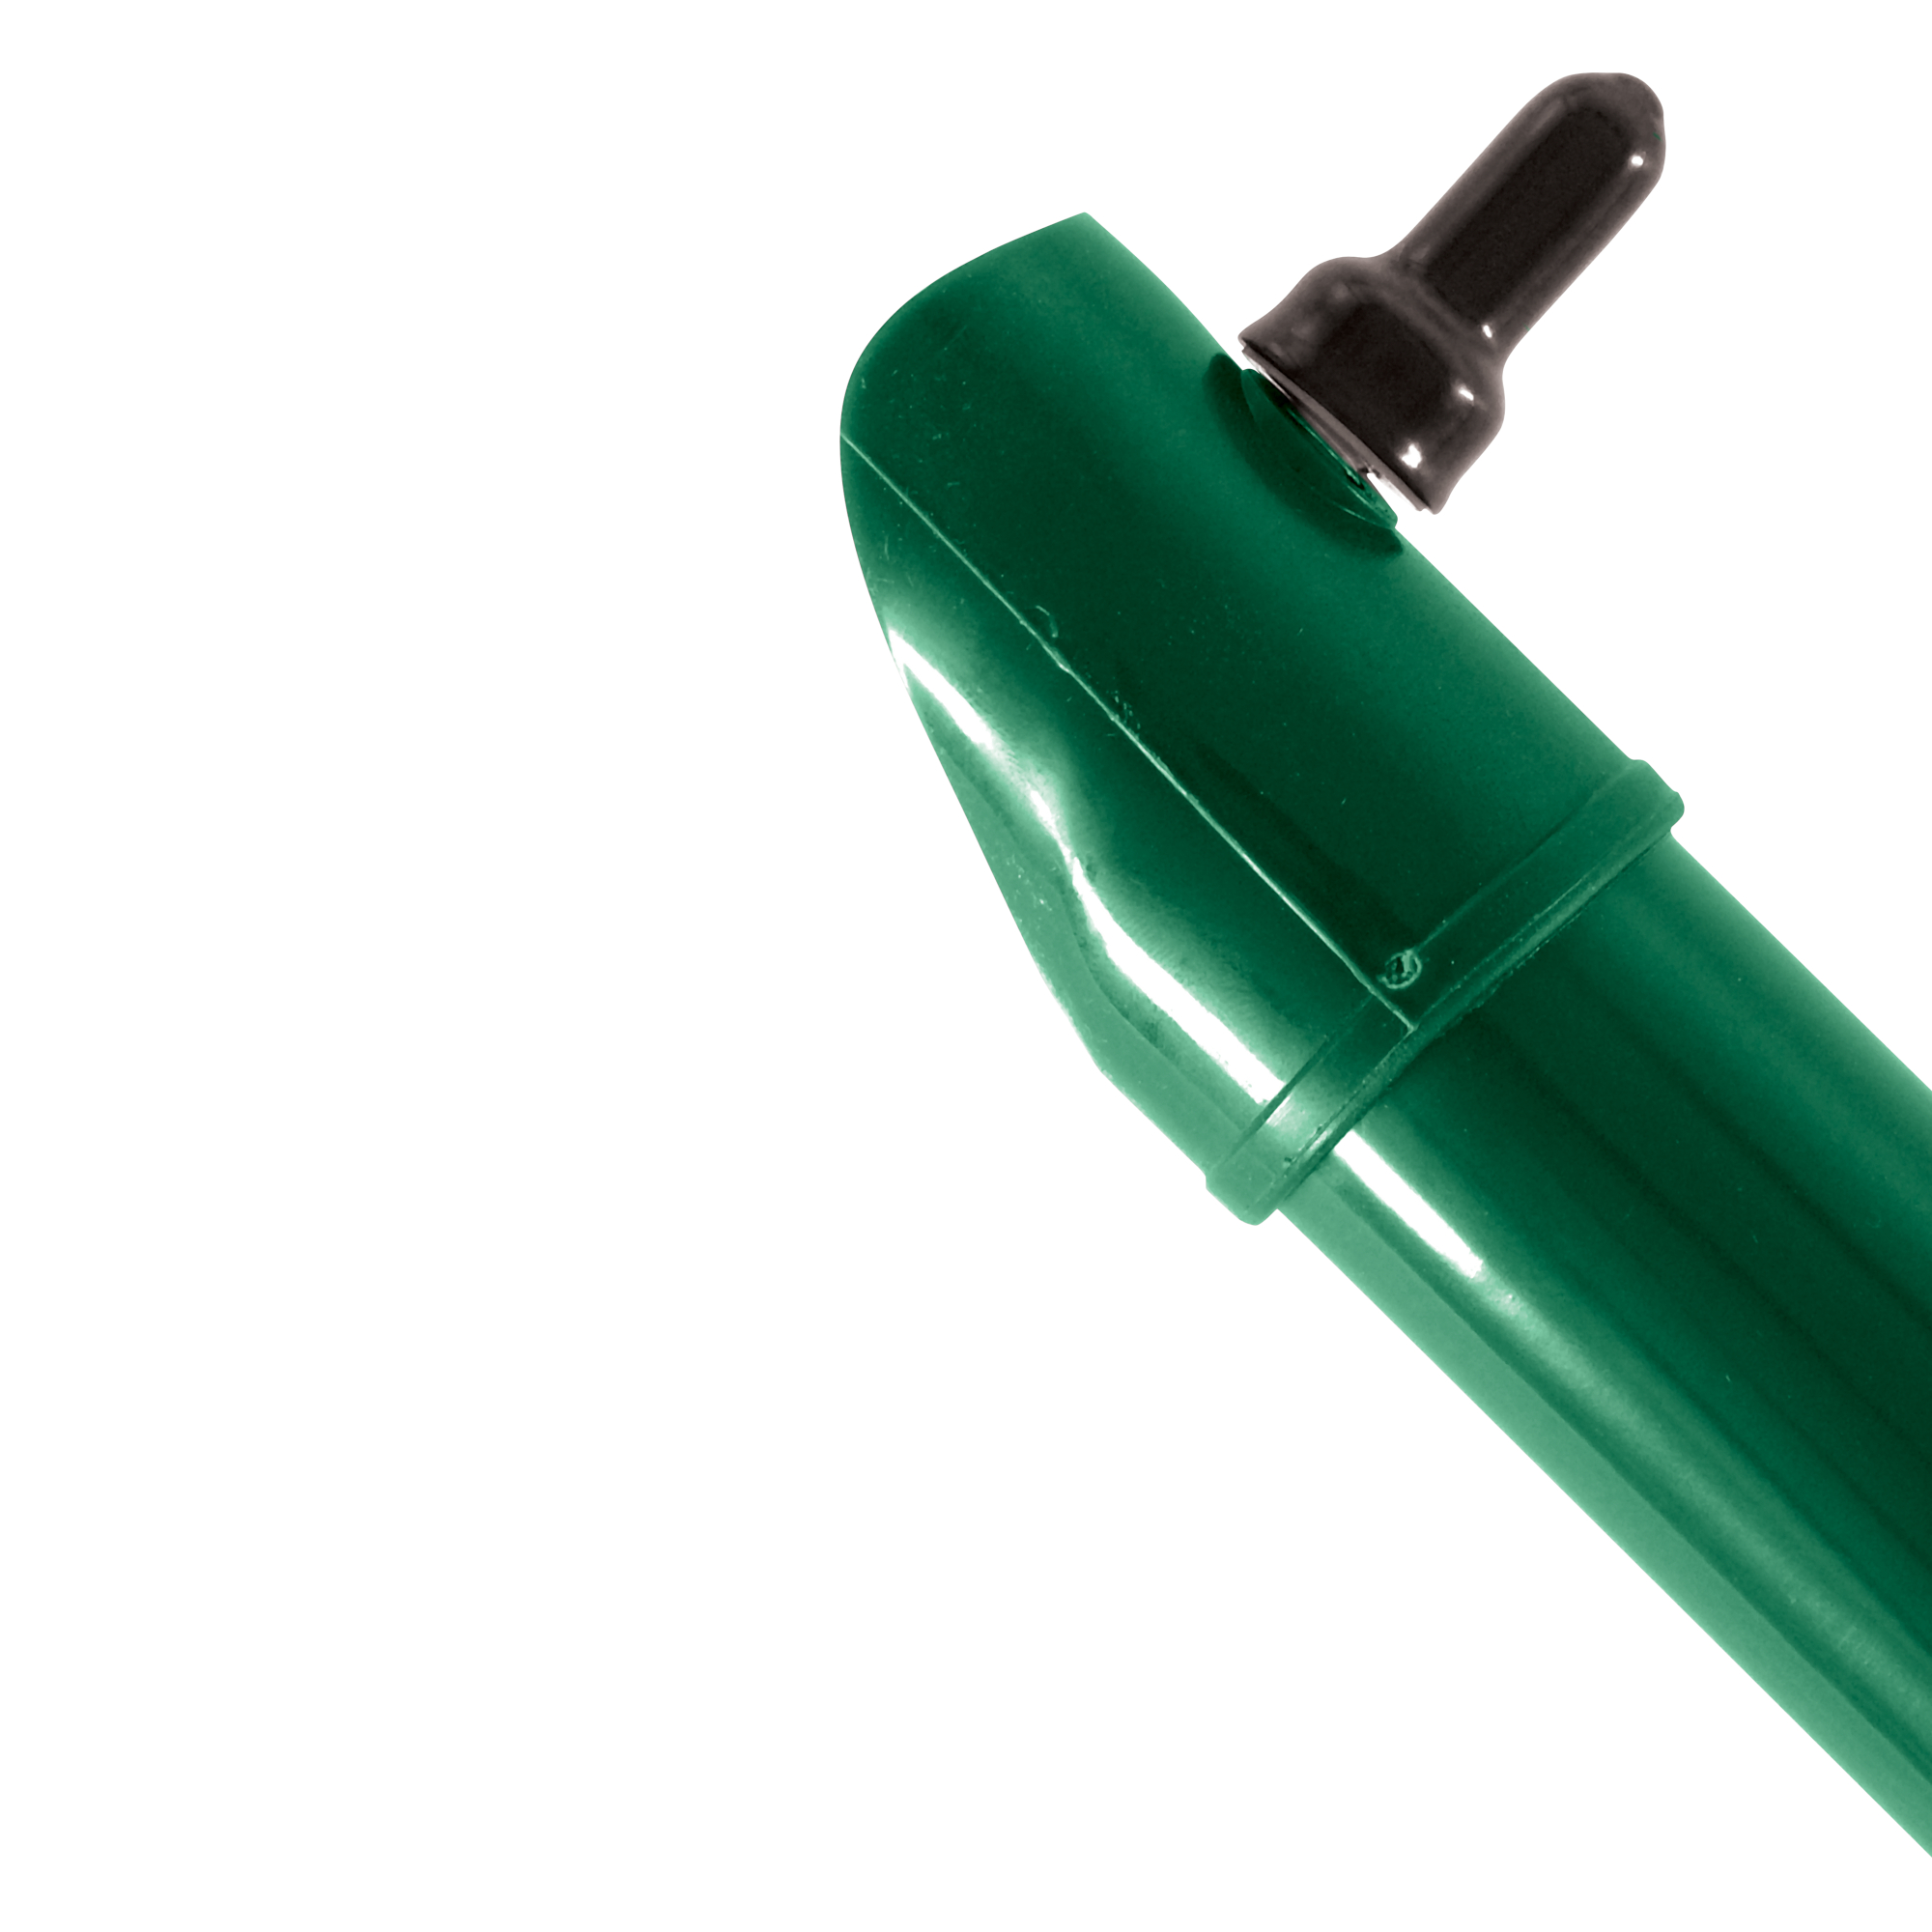 Vzpěra kulatá Ideal Zn + PVC zelená průměr 38 mm délka 1,75 m